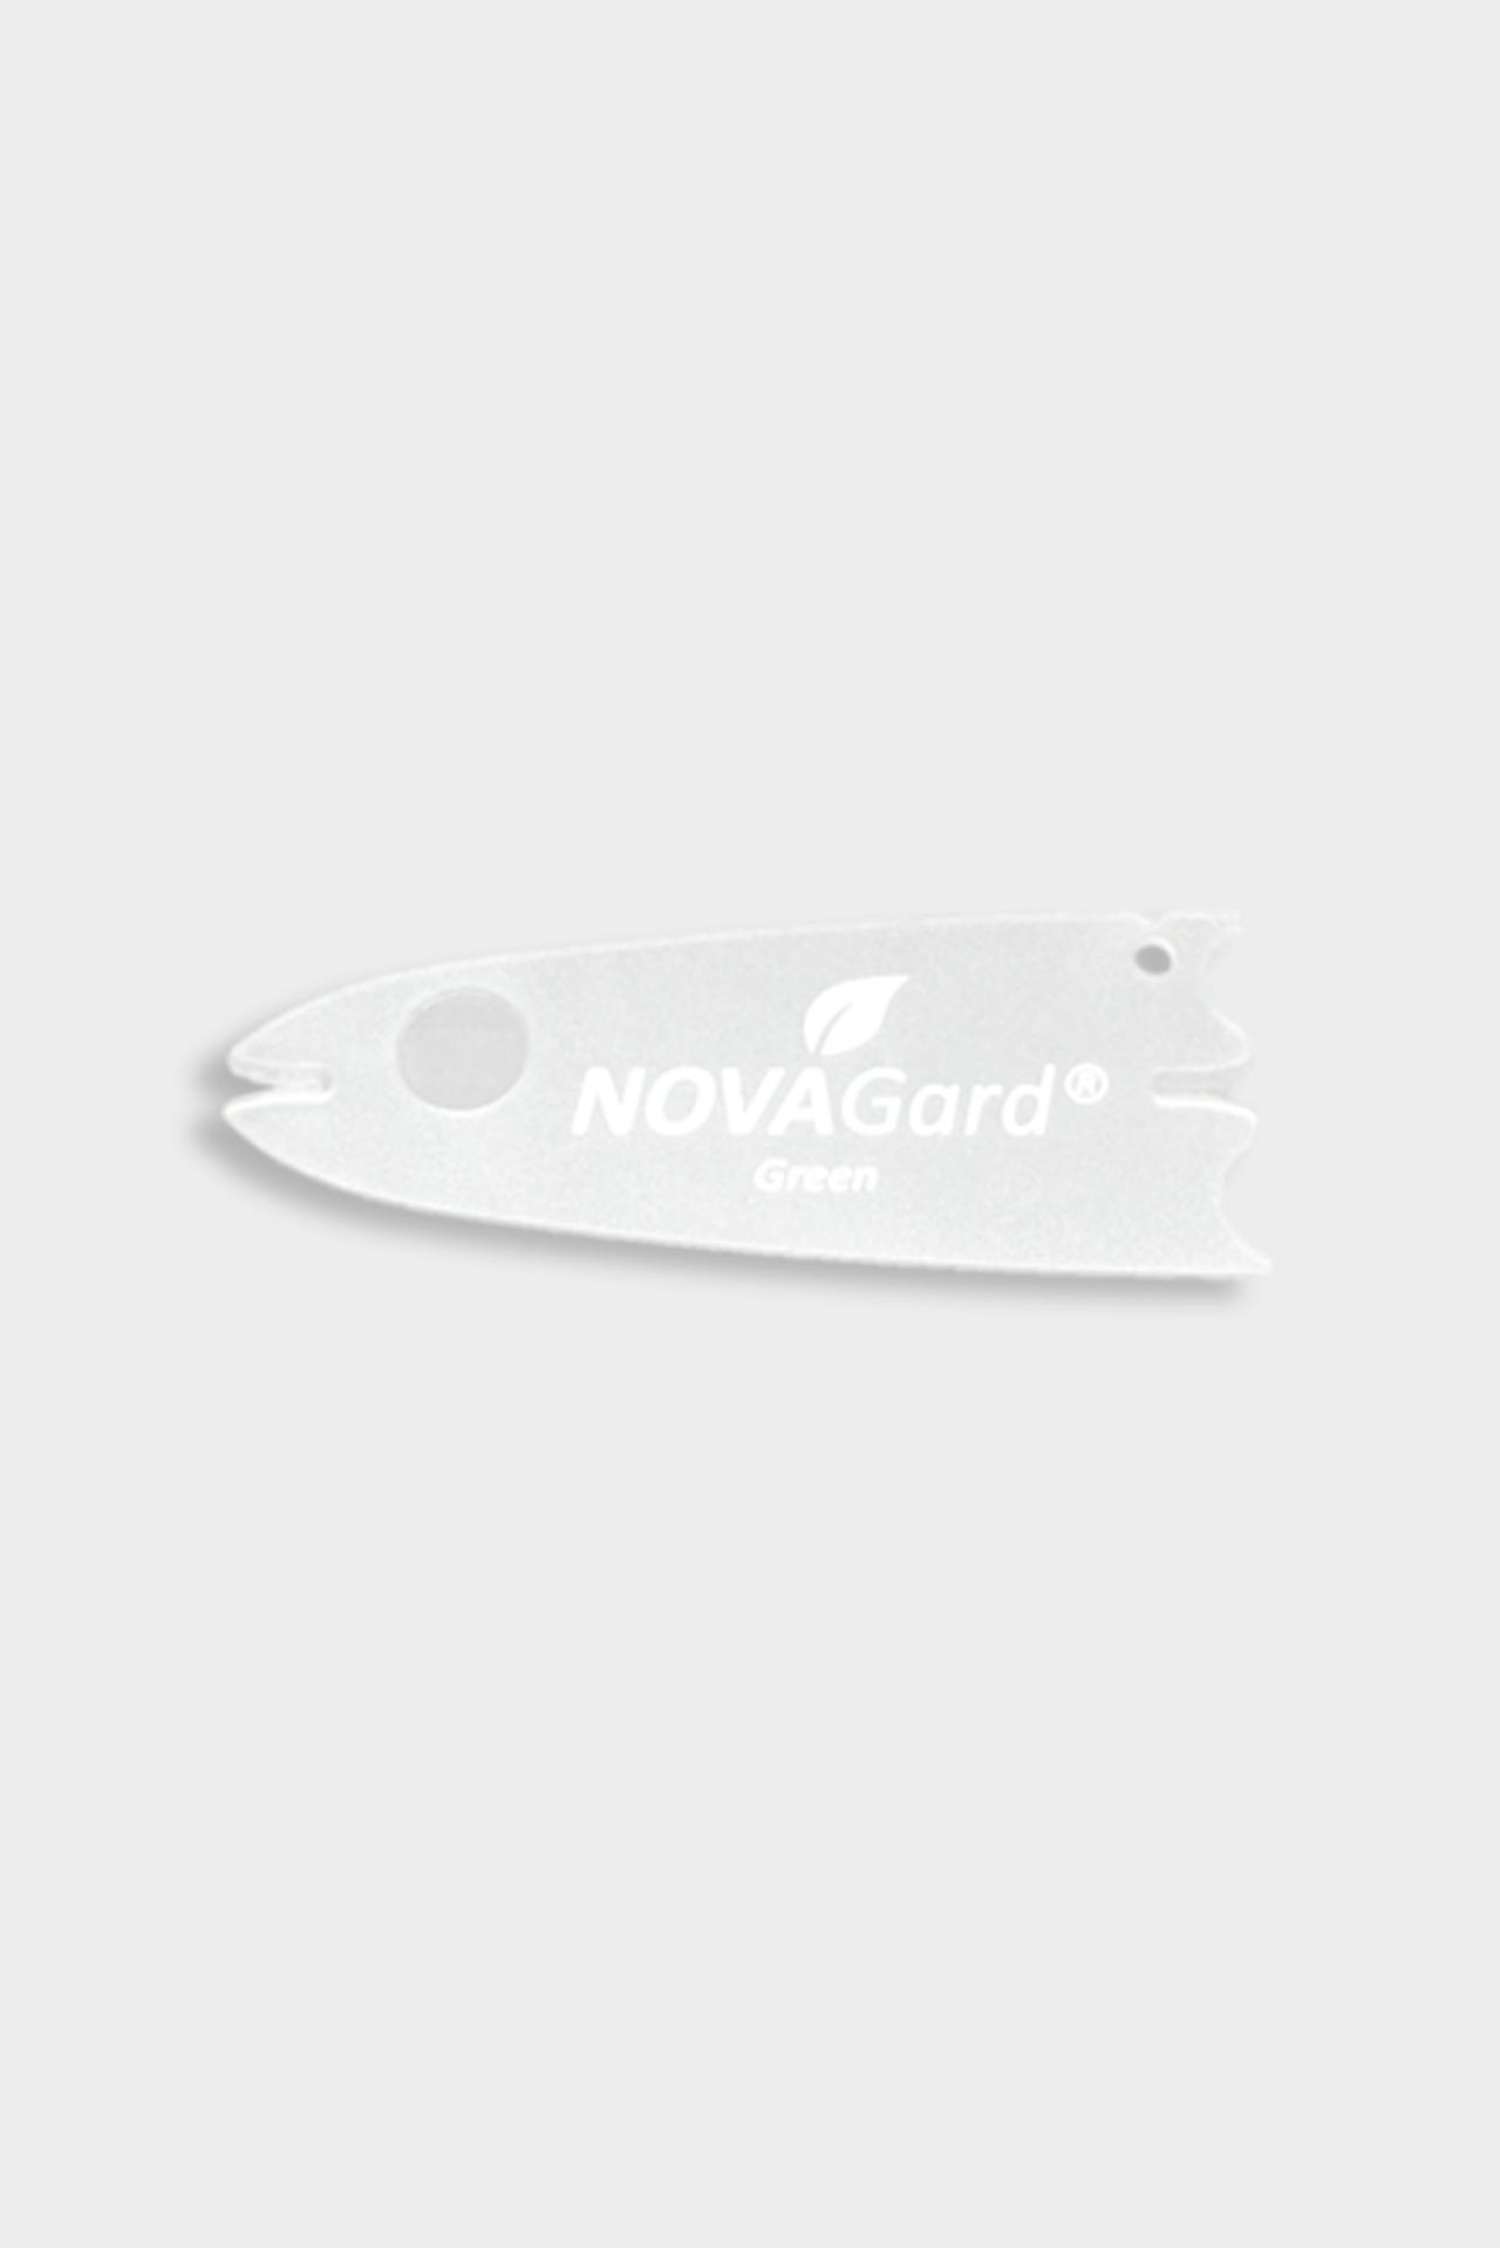 NovaGard Green Zeckenkarte 